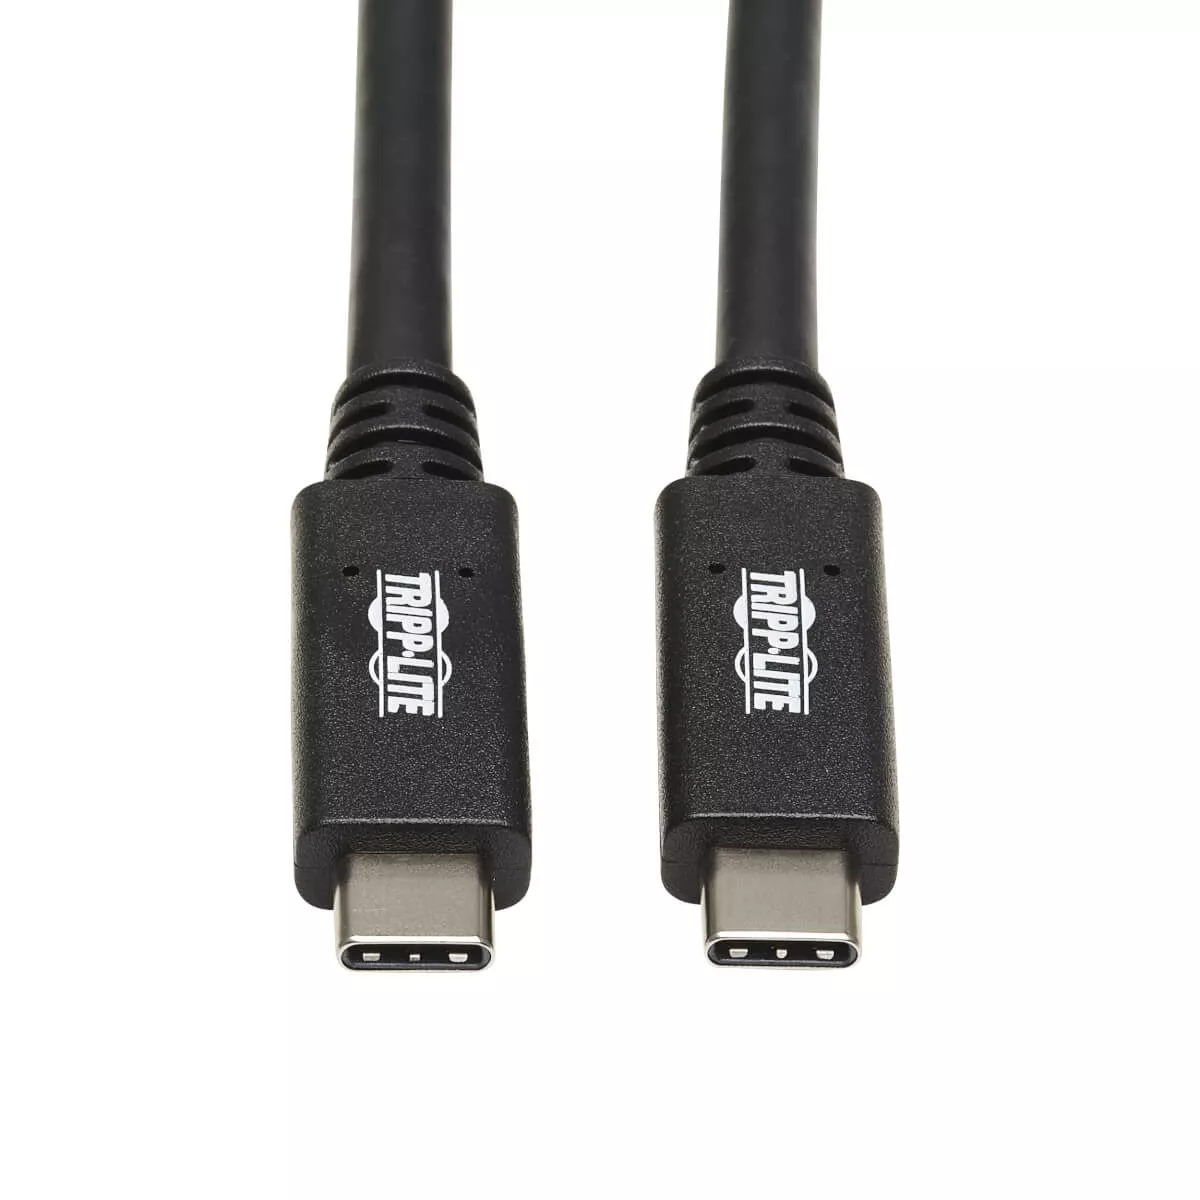 Vente Câble USB EATON TRIPPLITE USB-C Cable M/M - USB 3.1 Gen 2 10